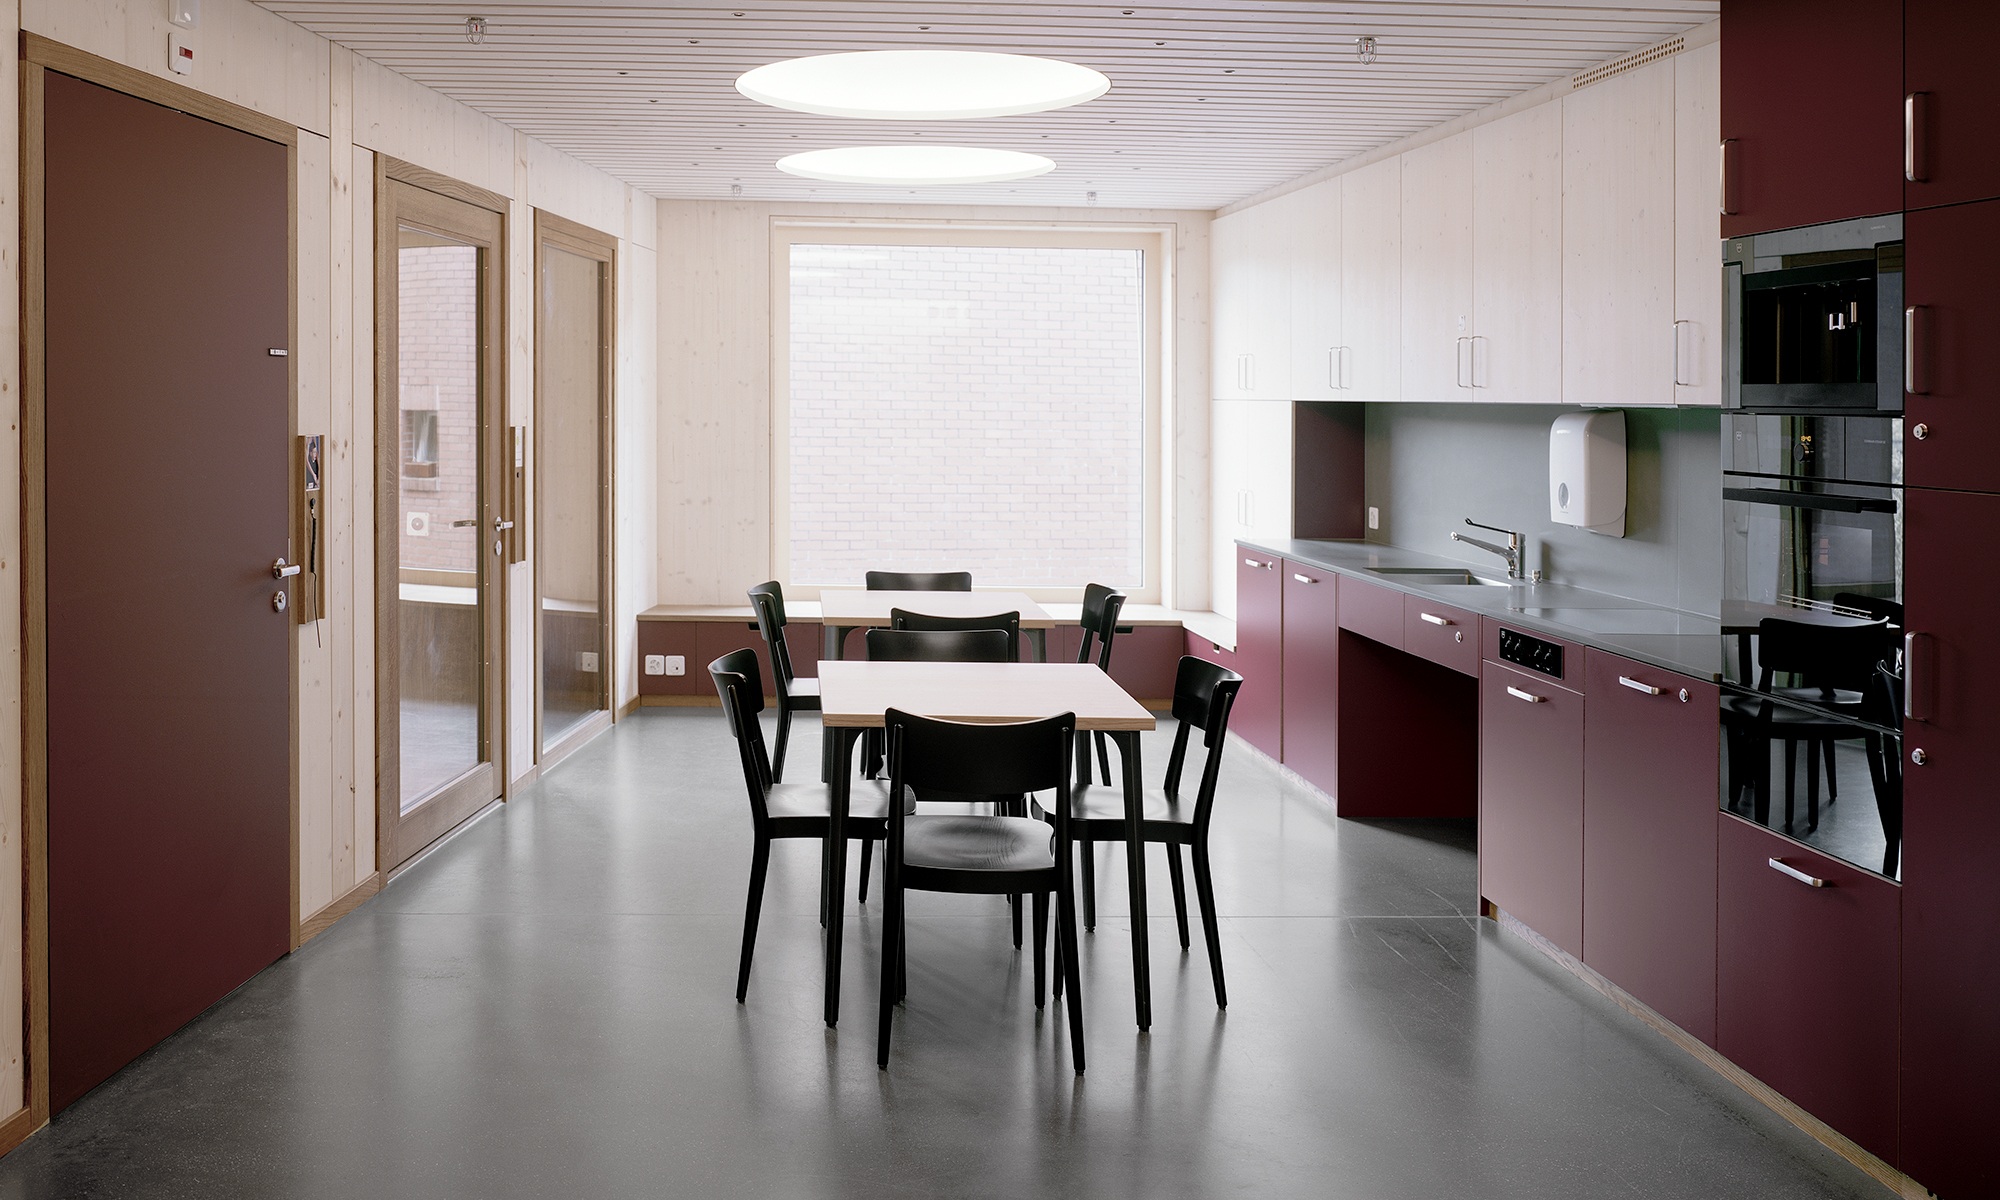 Innenansicht einer Küche im Wohnheim mit Wänden, Decke, Boden aus Holz und dunkelroter Küchenkombination